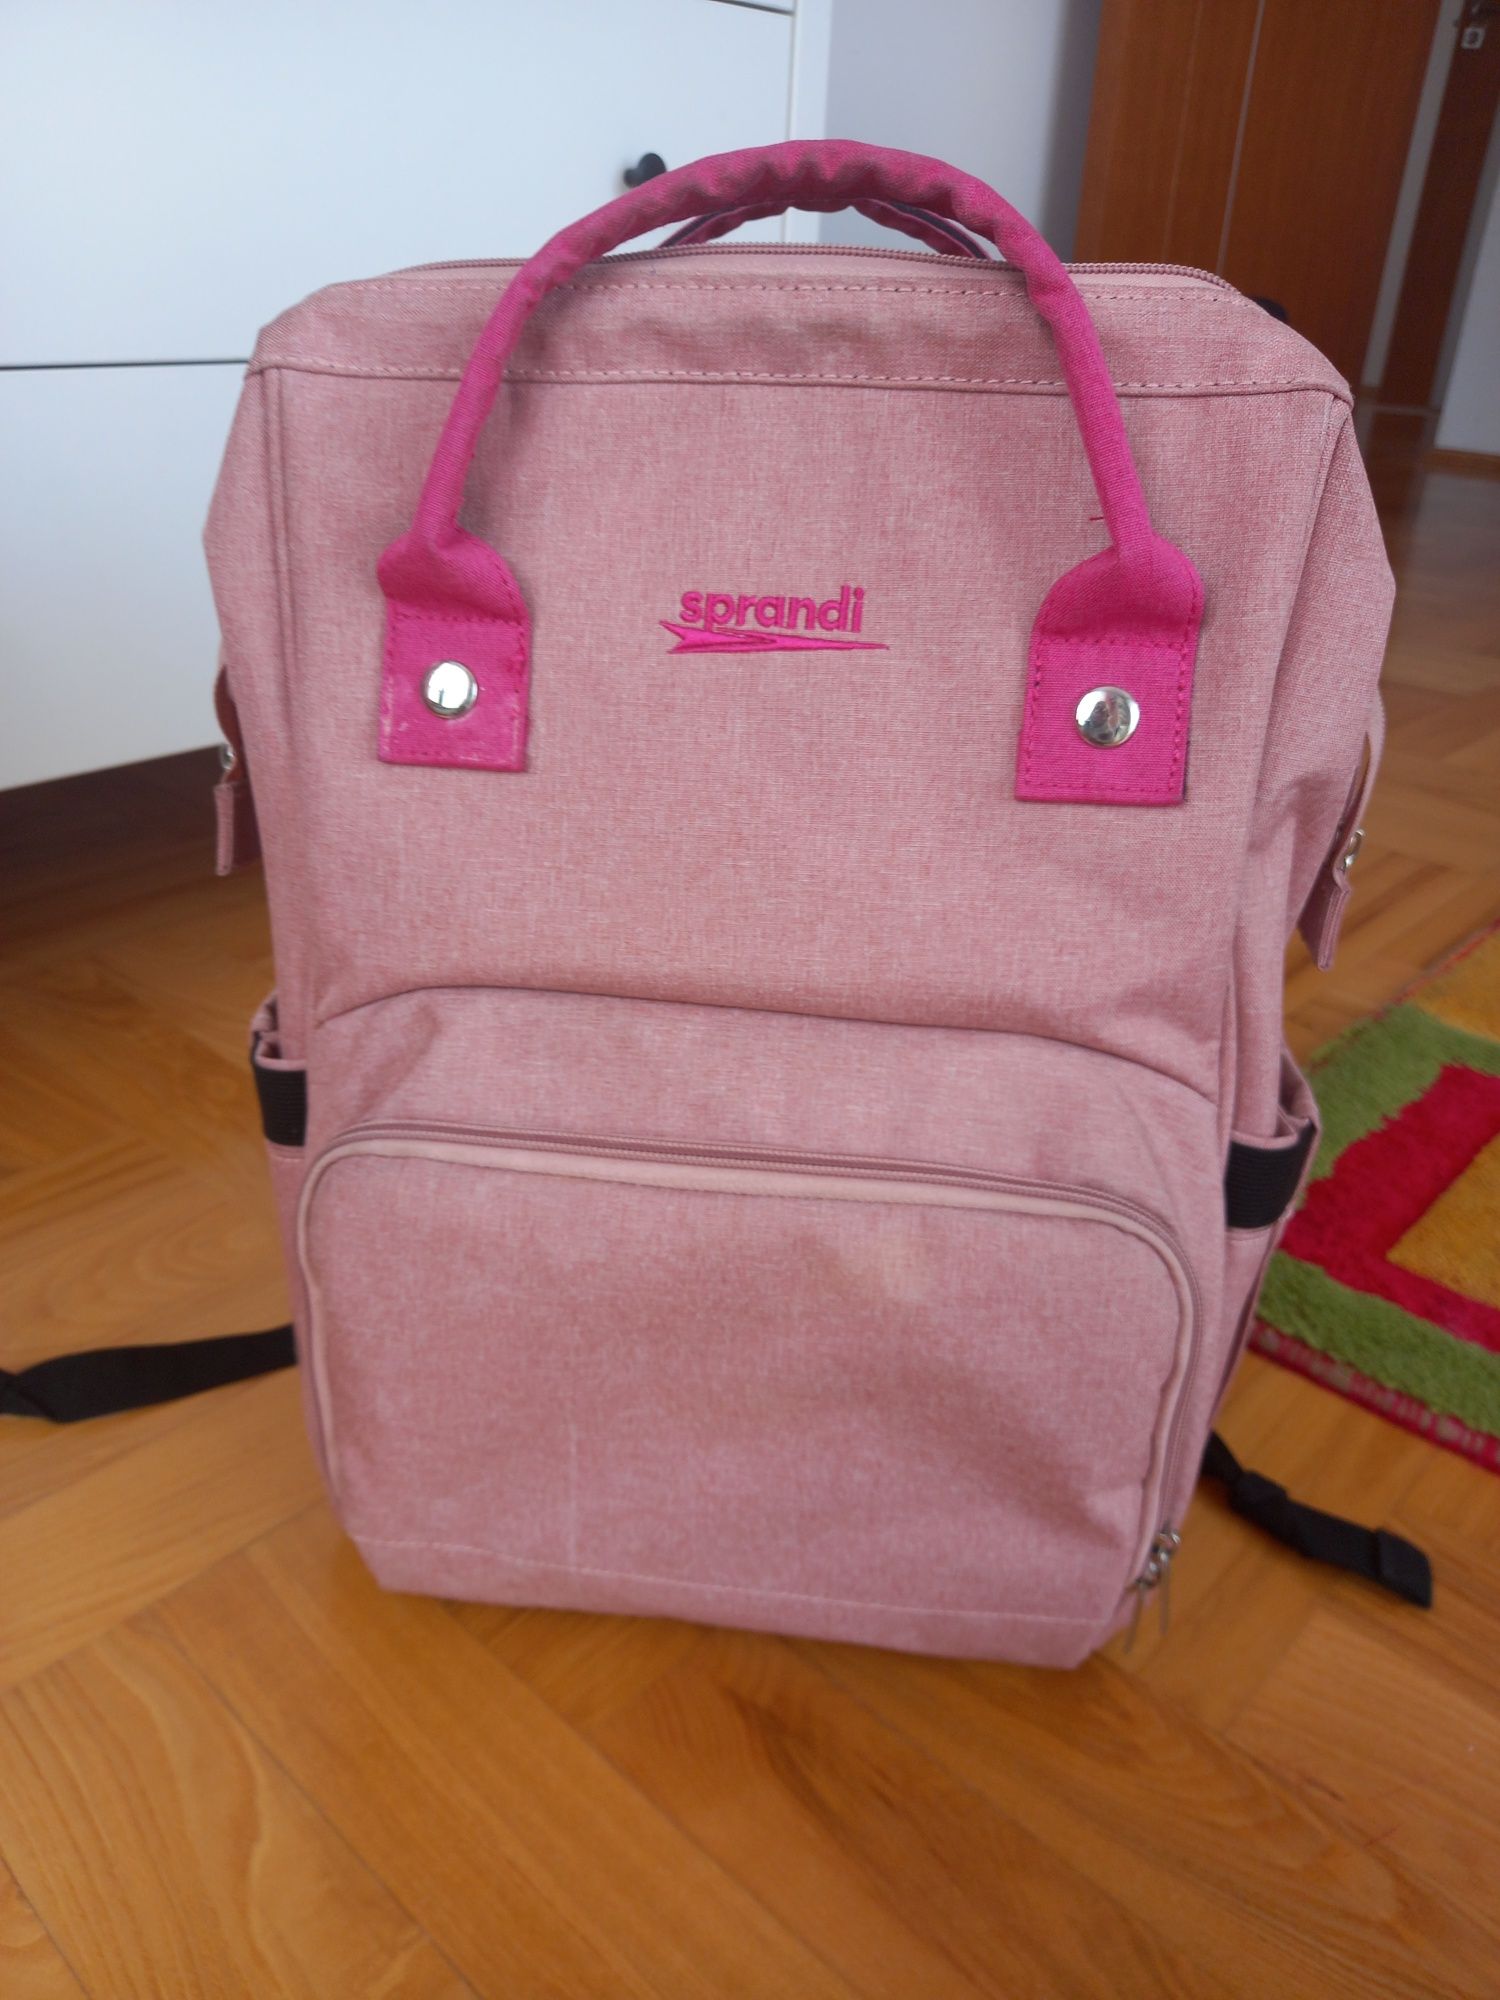 Plecak szkolny dla dziewczynki